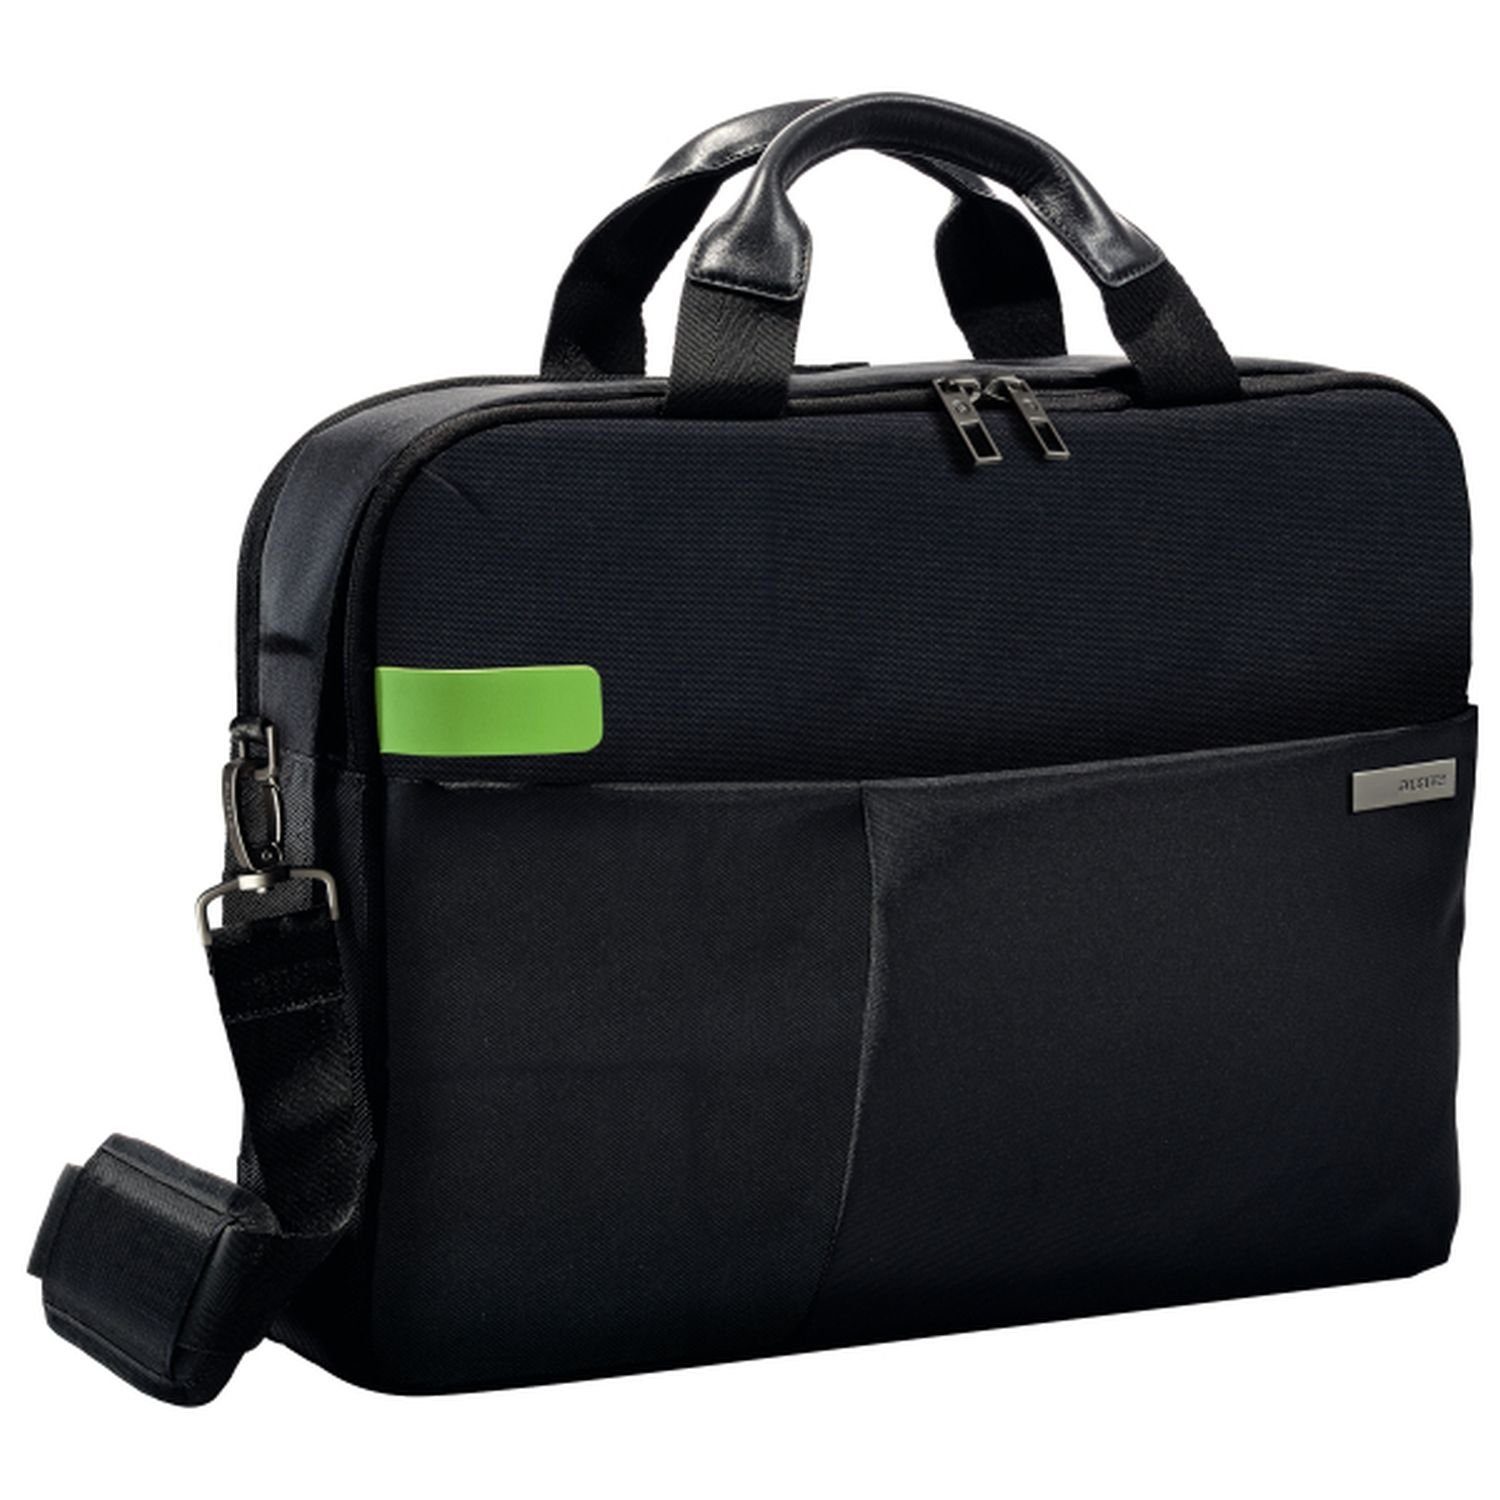 39,62 LEITZ Brieftasche LEITZ für cm Smart Traveller Notebook-Tasche Complete,